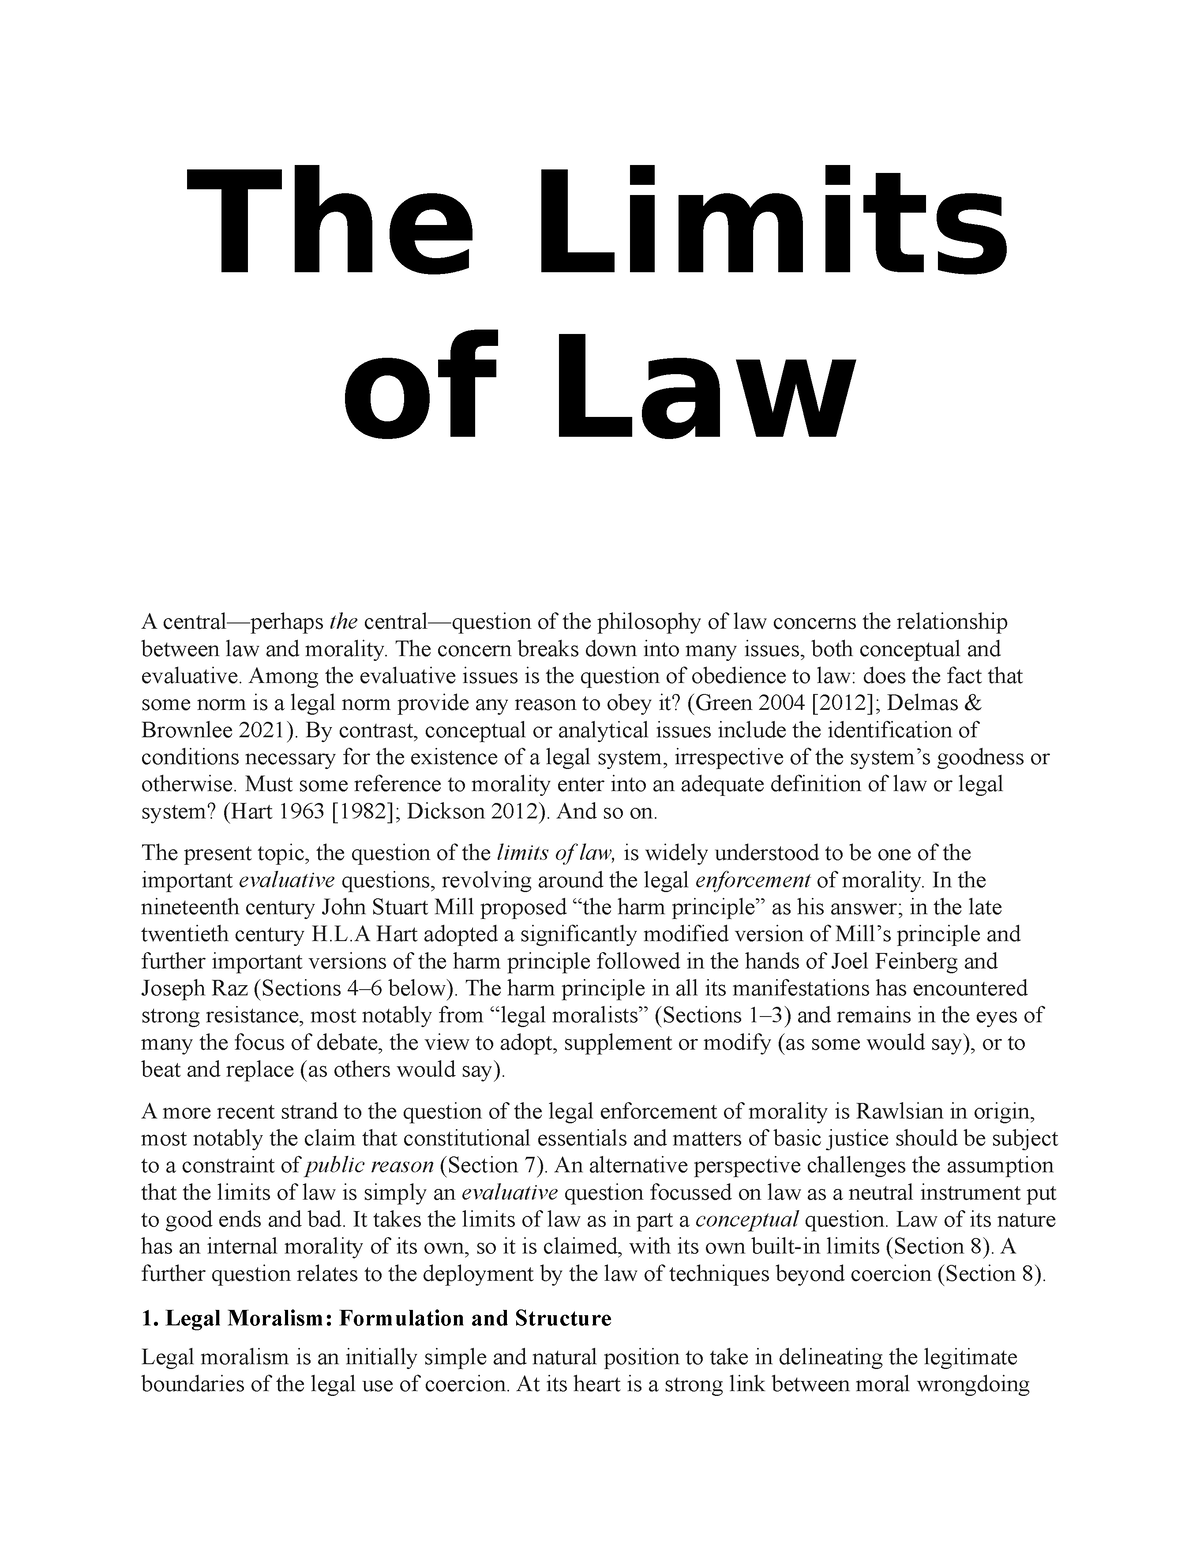 principle of legal moralism